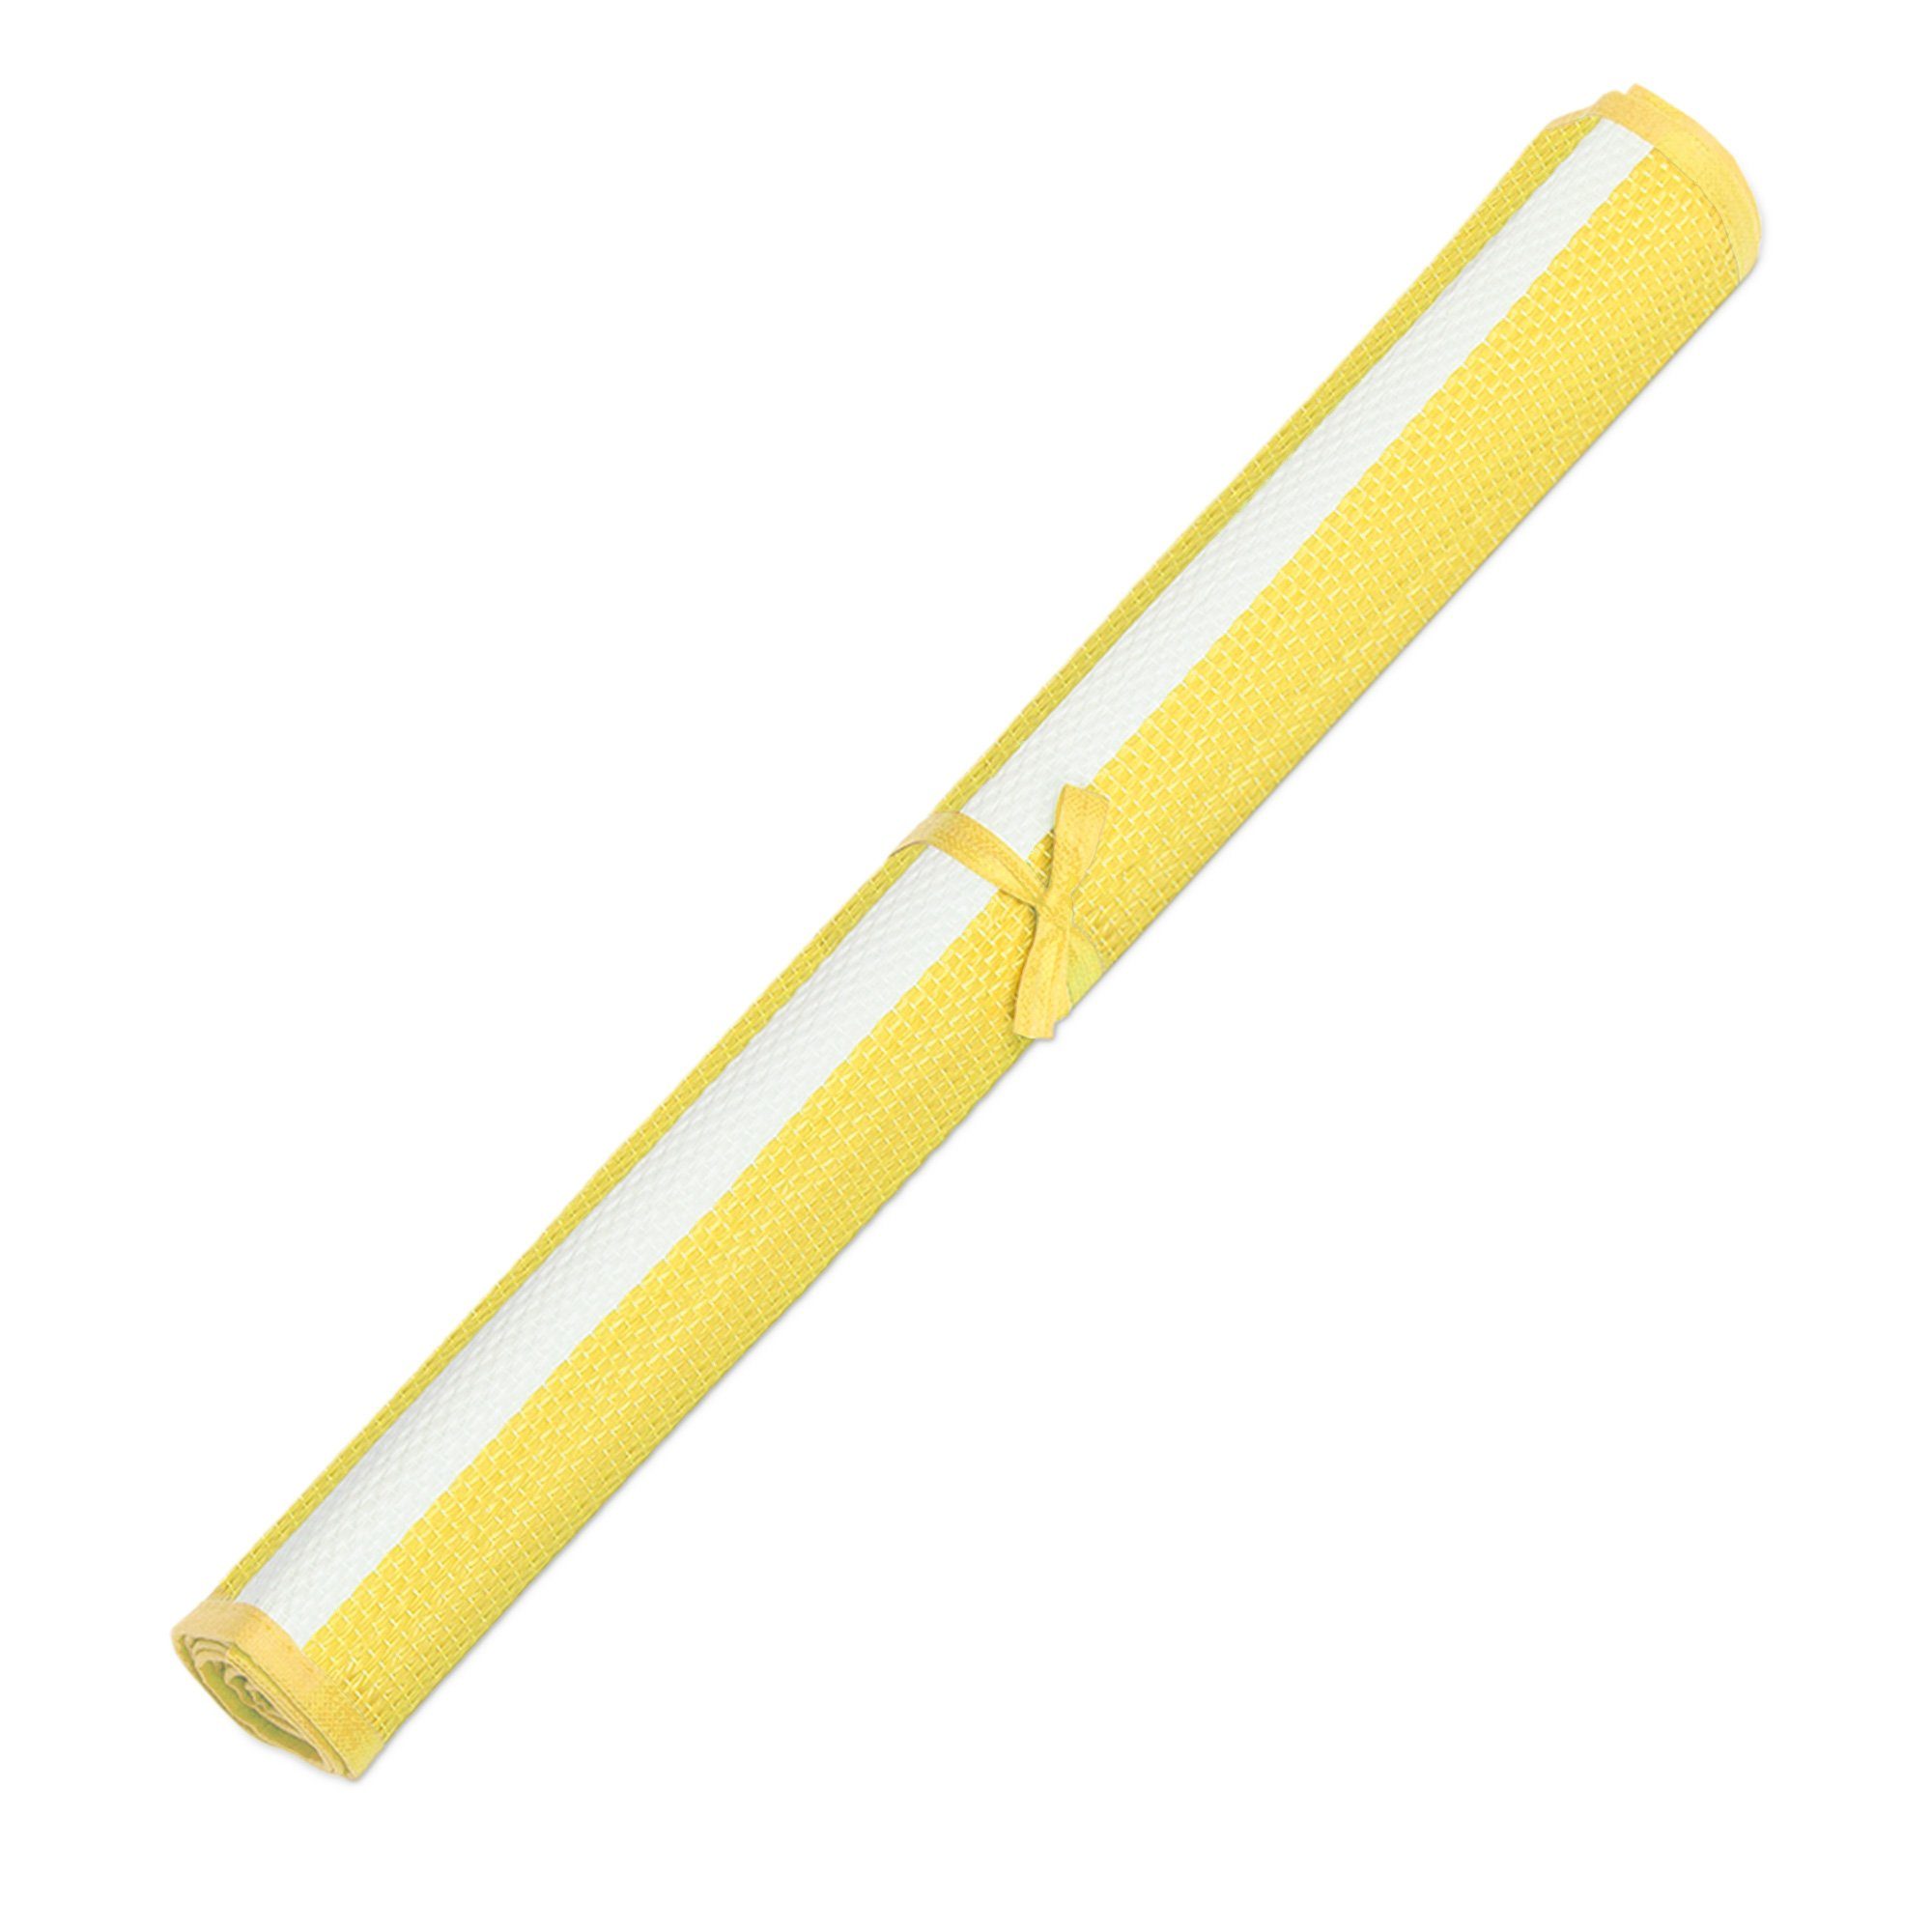 tragbar JEMIDI faltbar Liegematte Strandmatte gelb Strandtuch 60x180cm weiß -